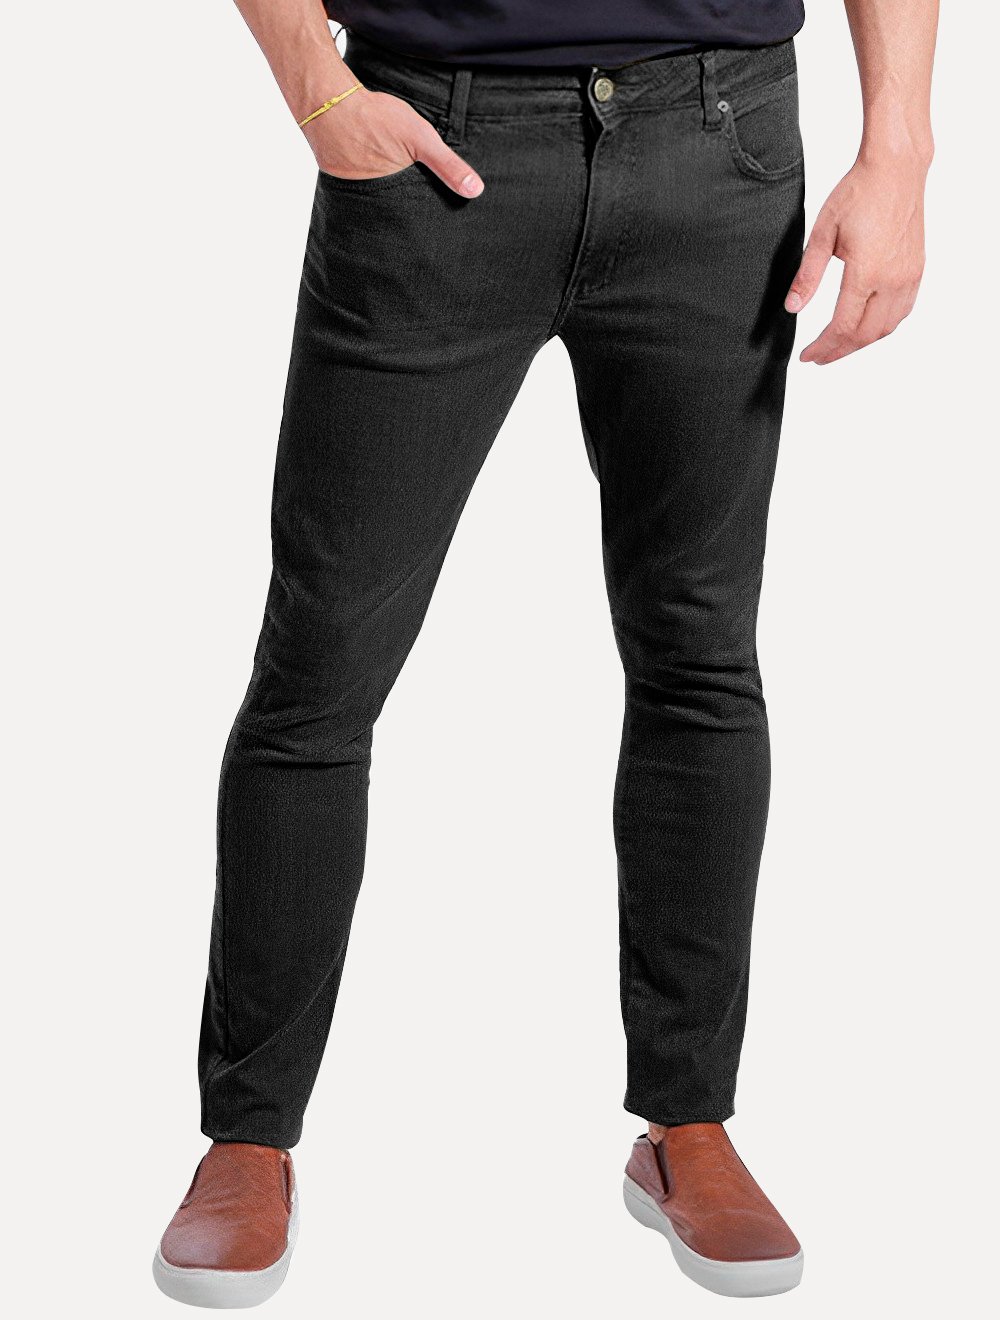 Calça Ralph Lauren Jeans Masculina Slim Stretch Preta